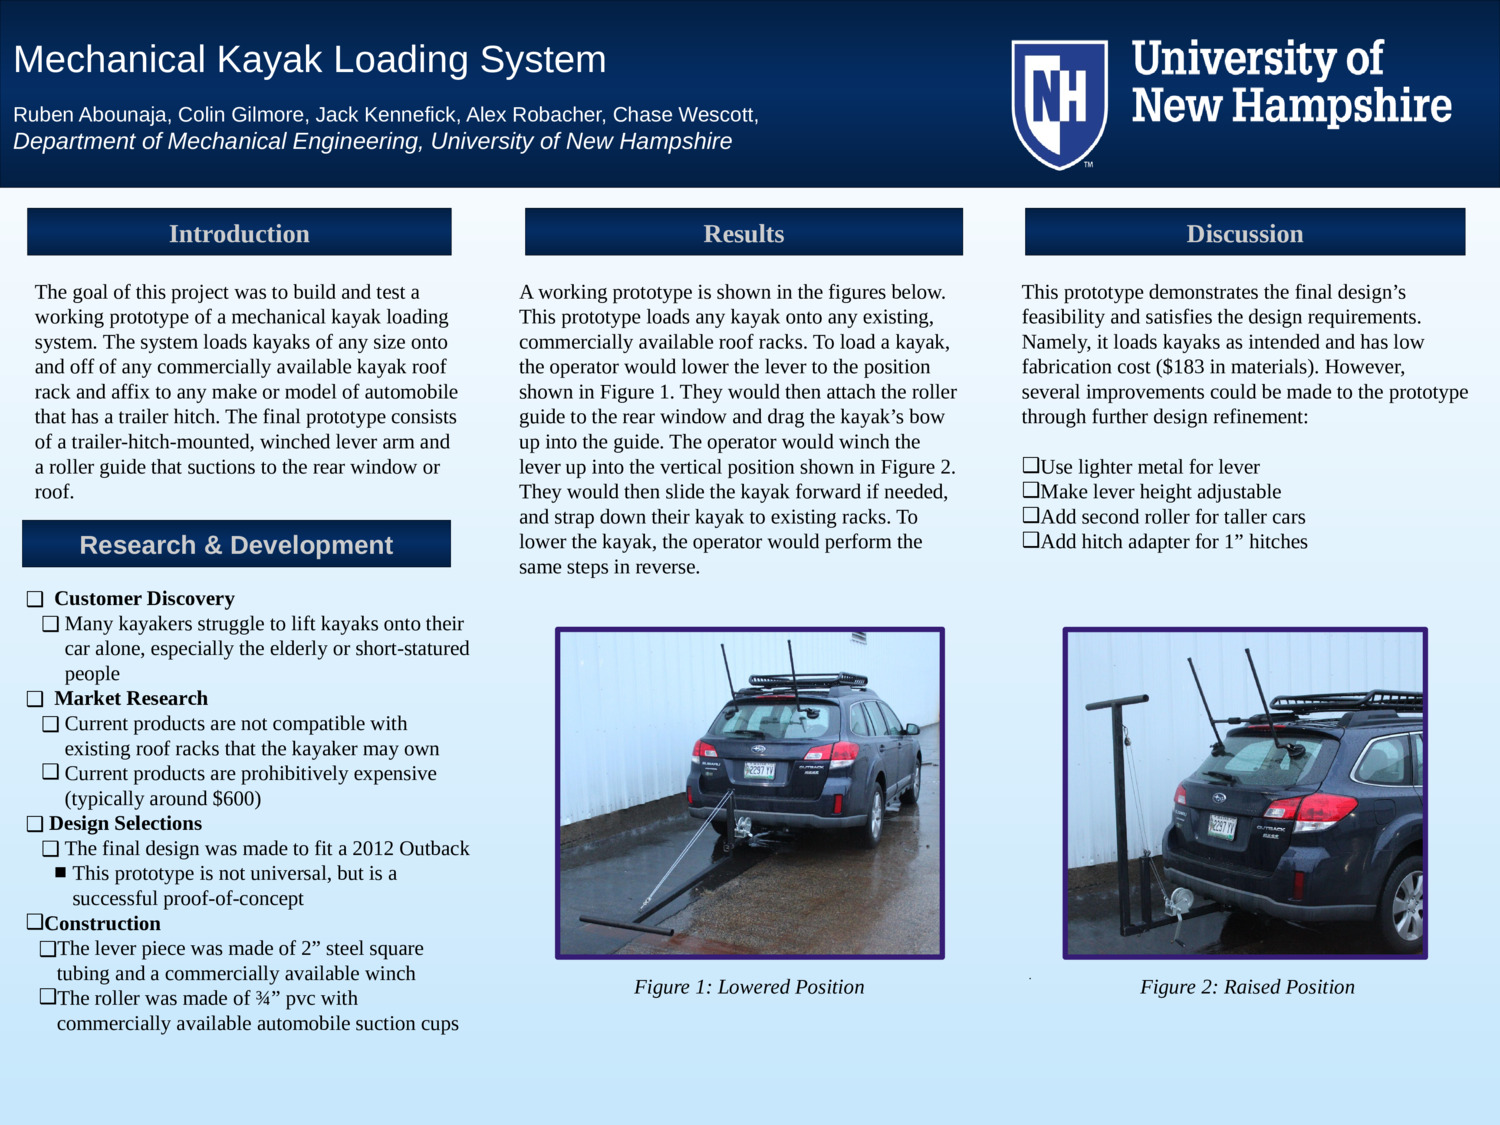 Mechanical Kayak Loading System by jhk1011